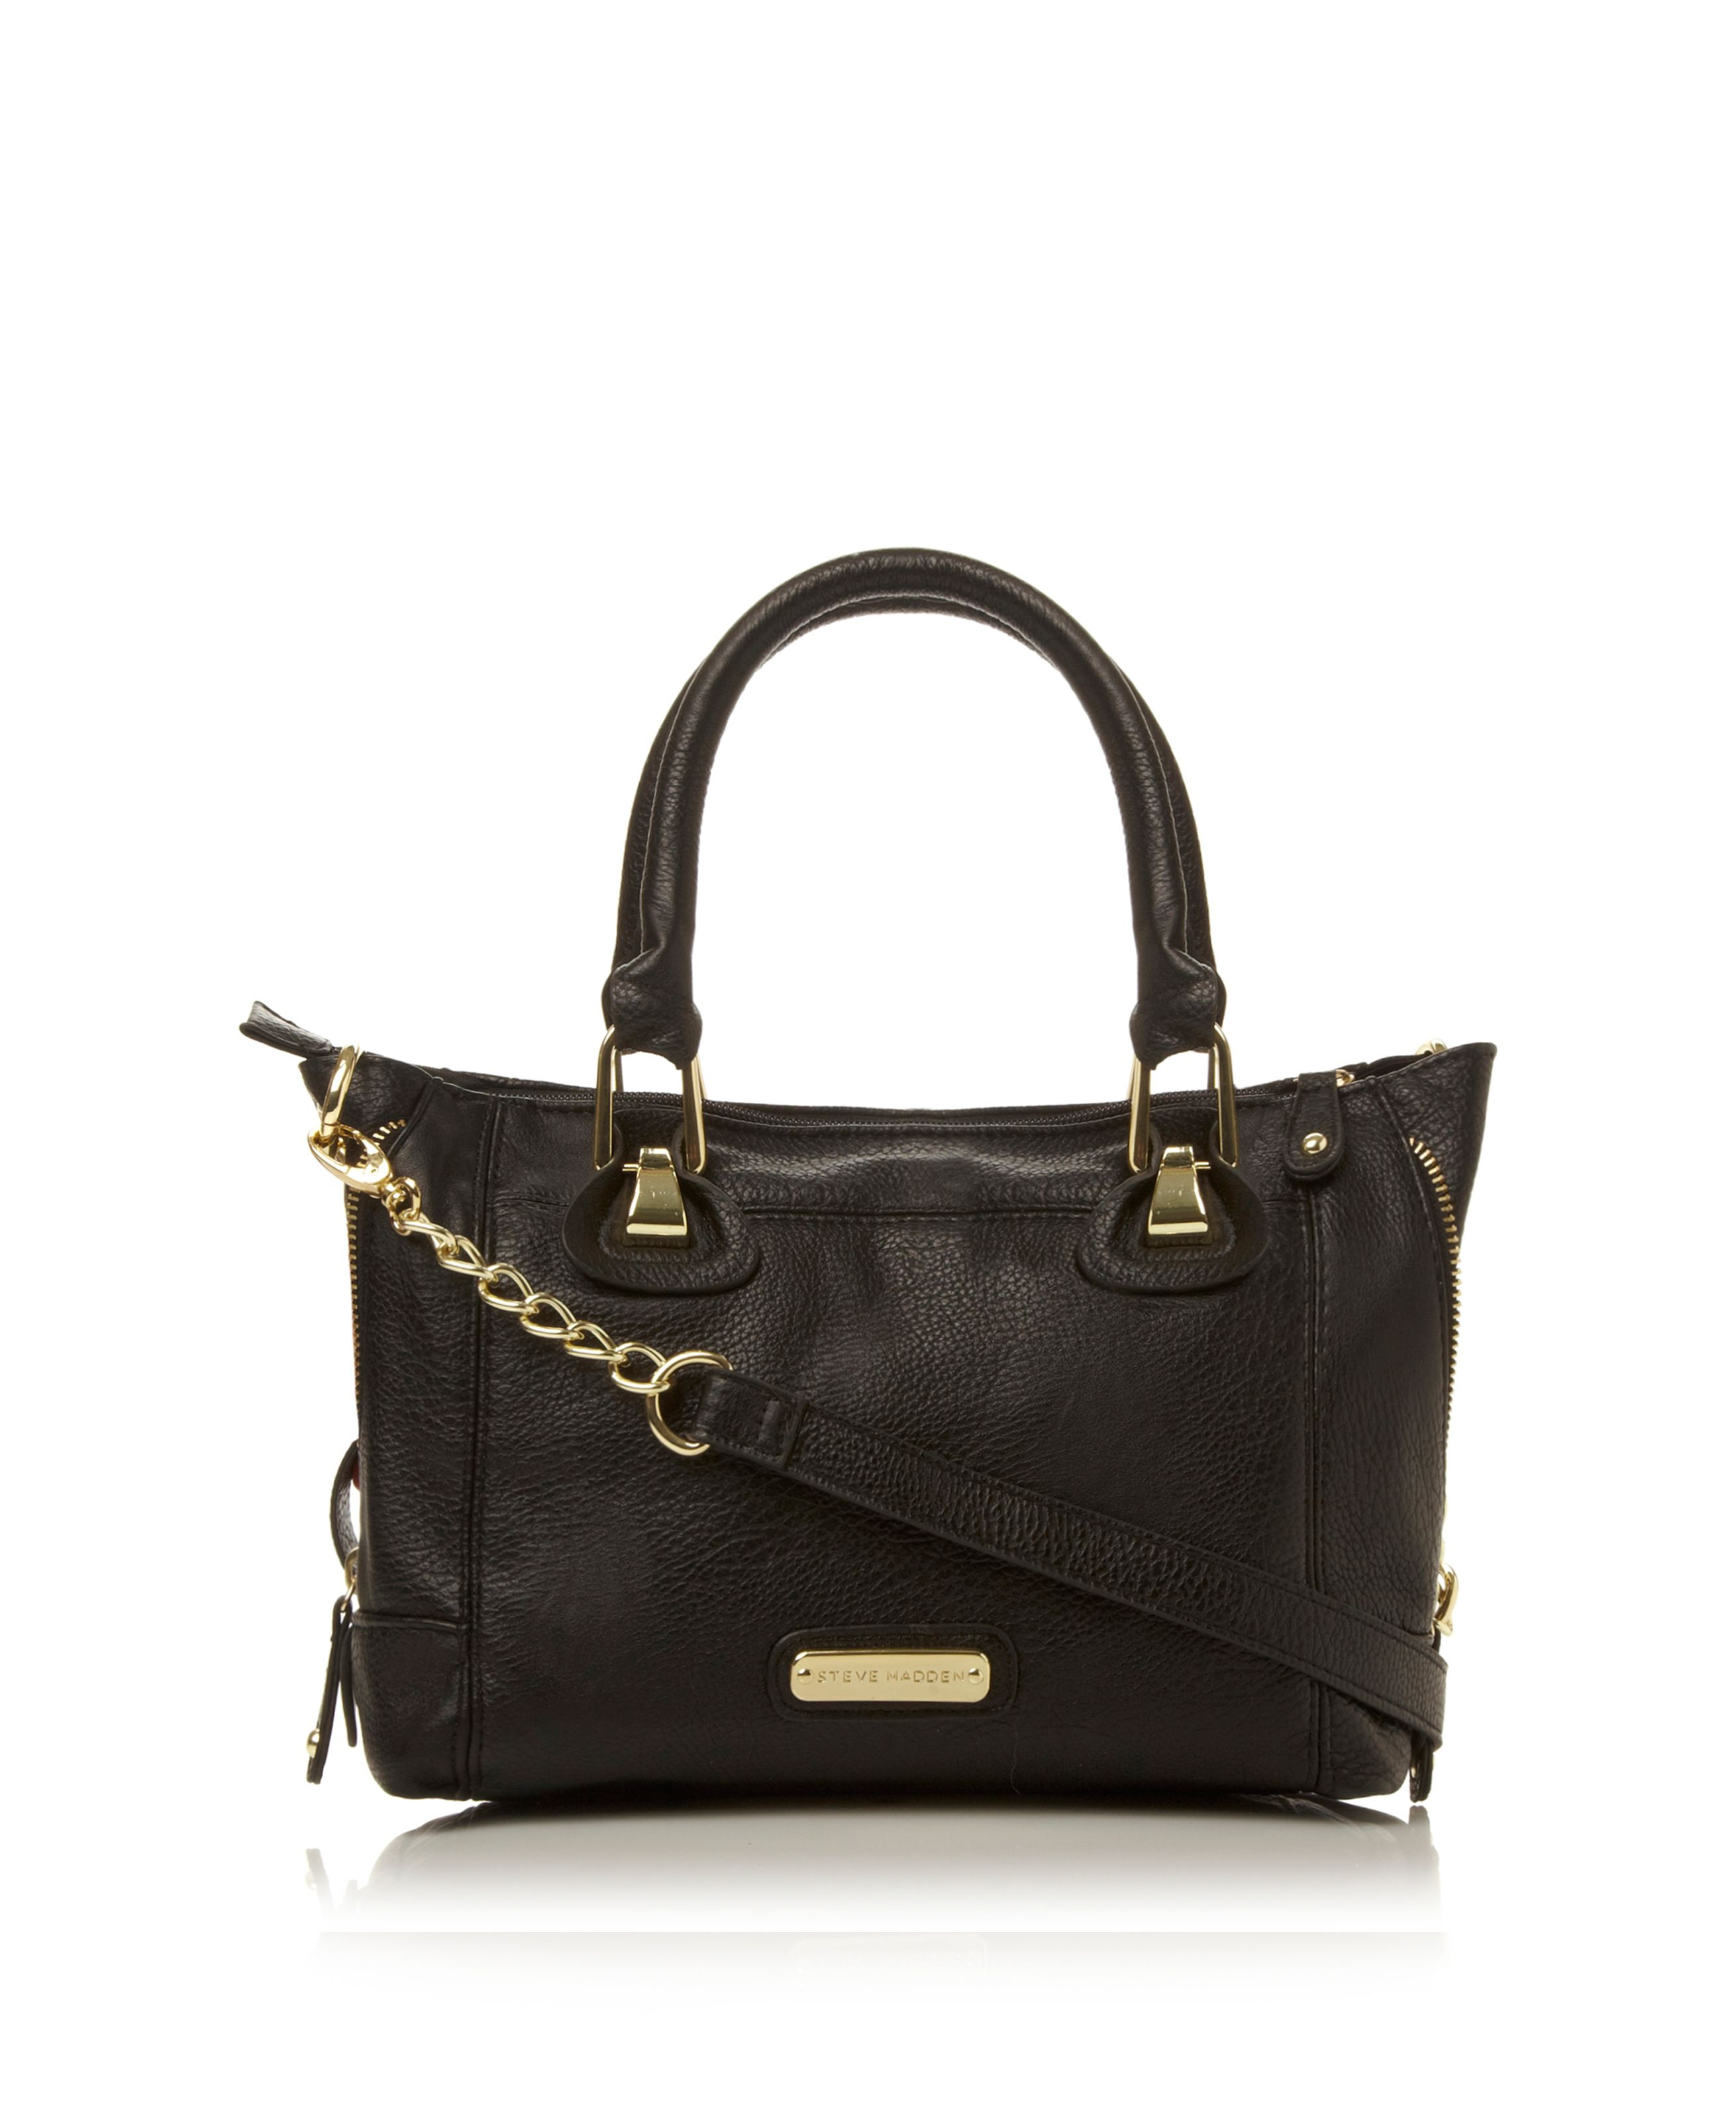 Steve Madden Bsocialt Chain Detail Handbag in Black | Lyst